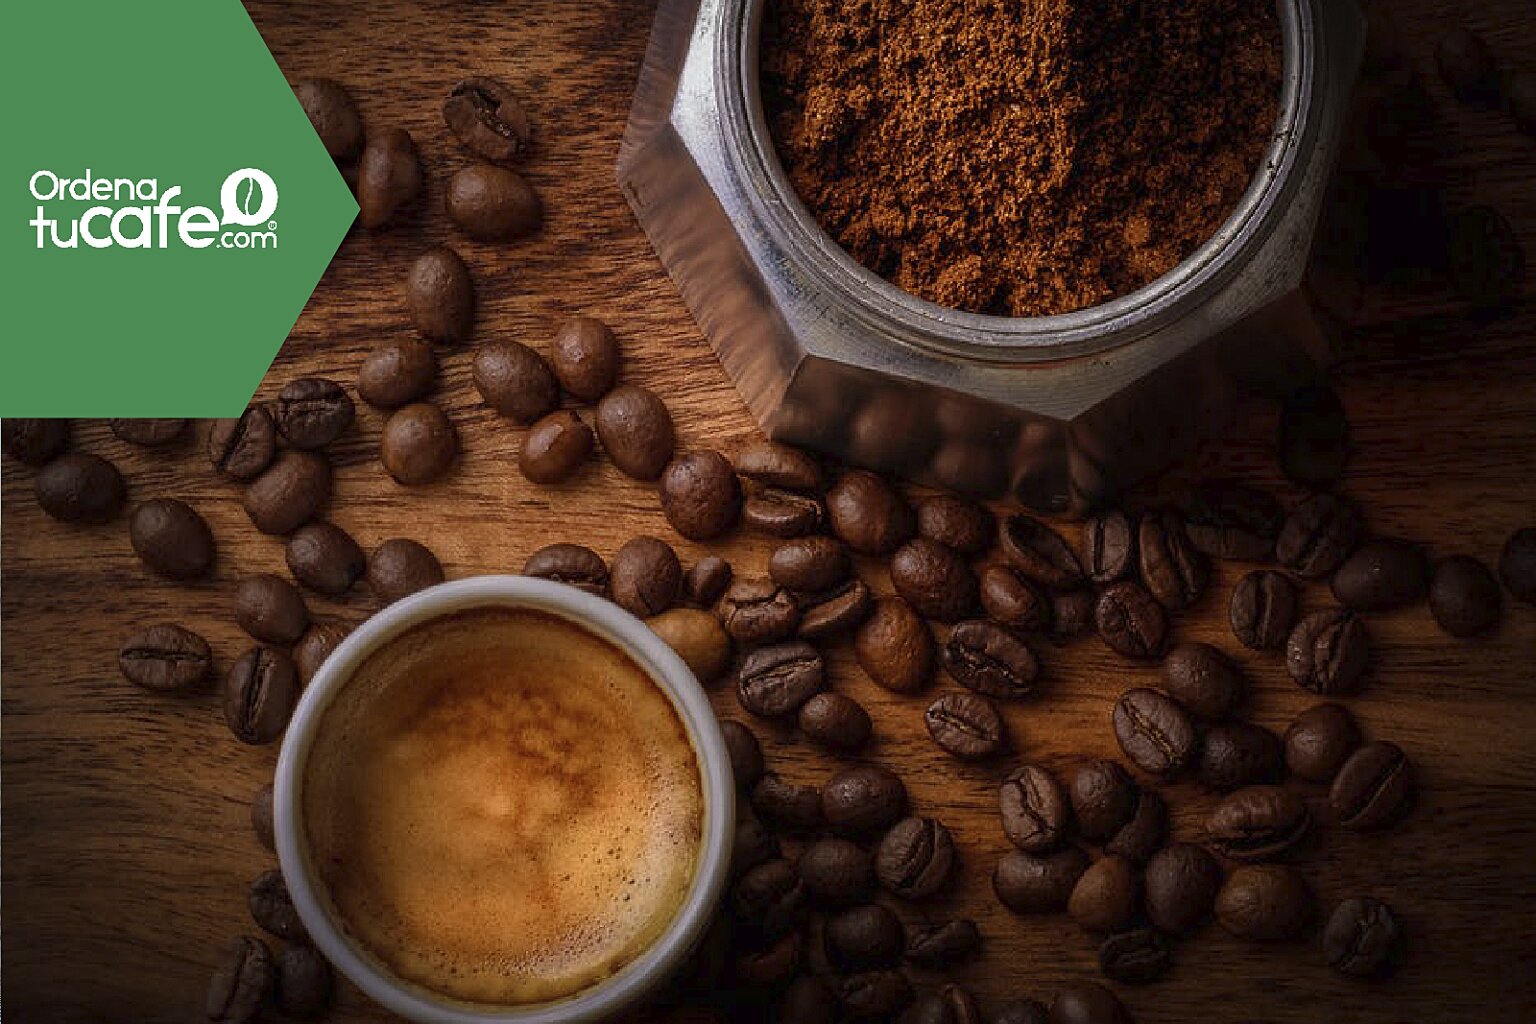 Cómo conservar el café molido y en granos